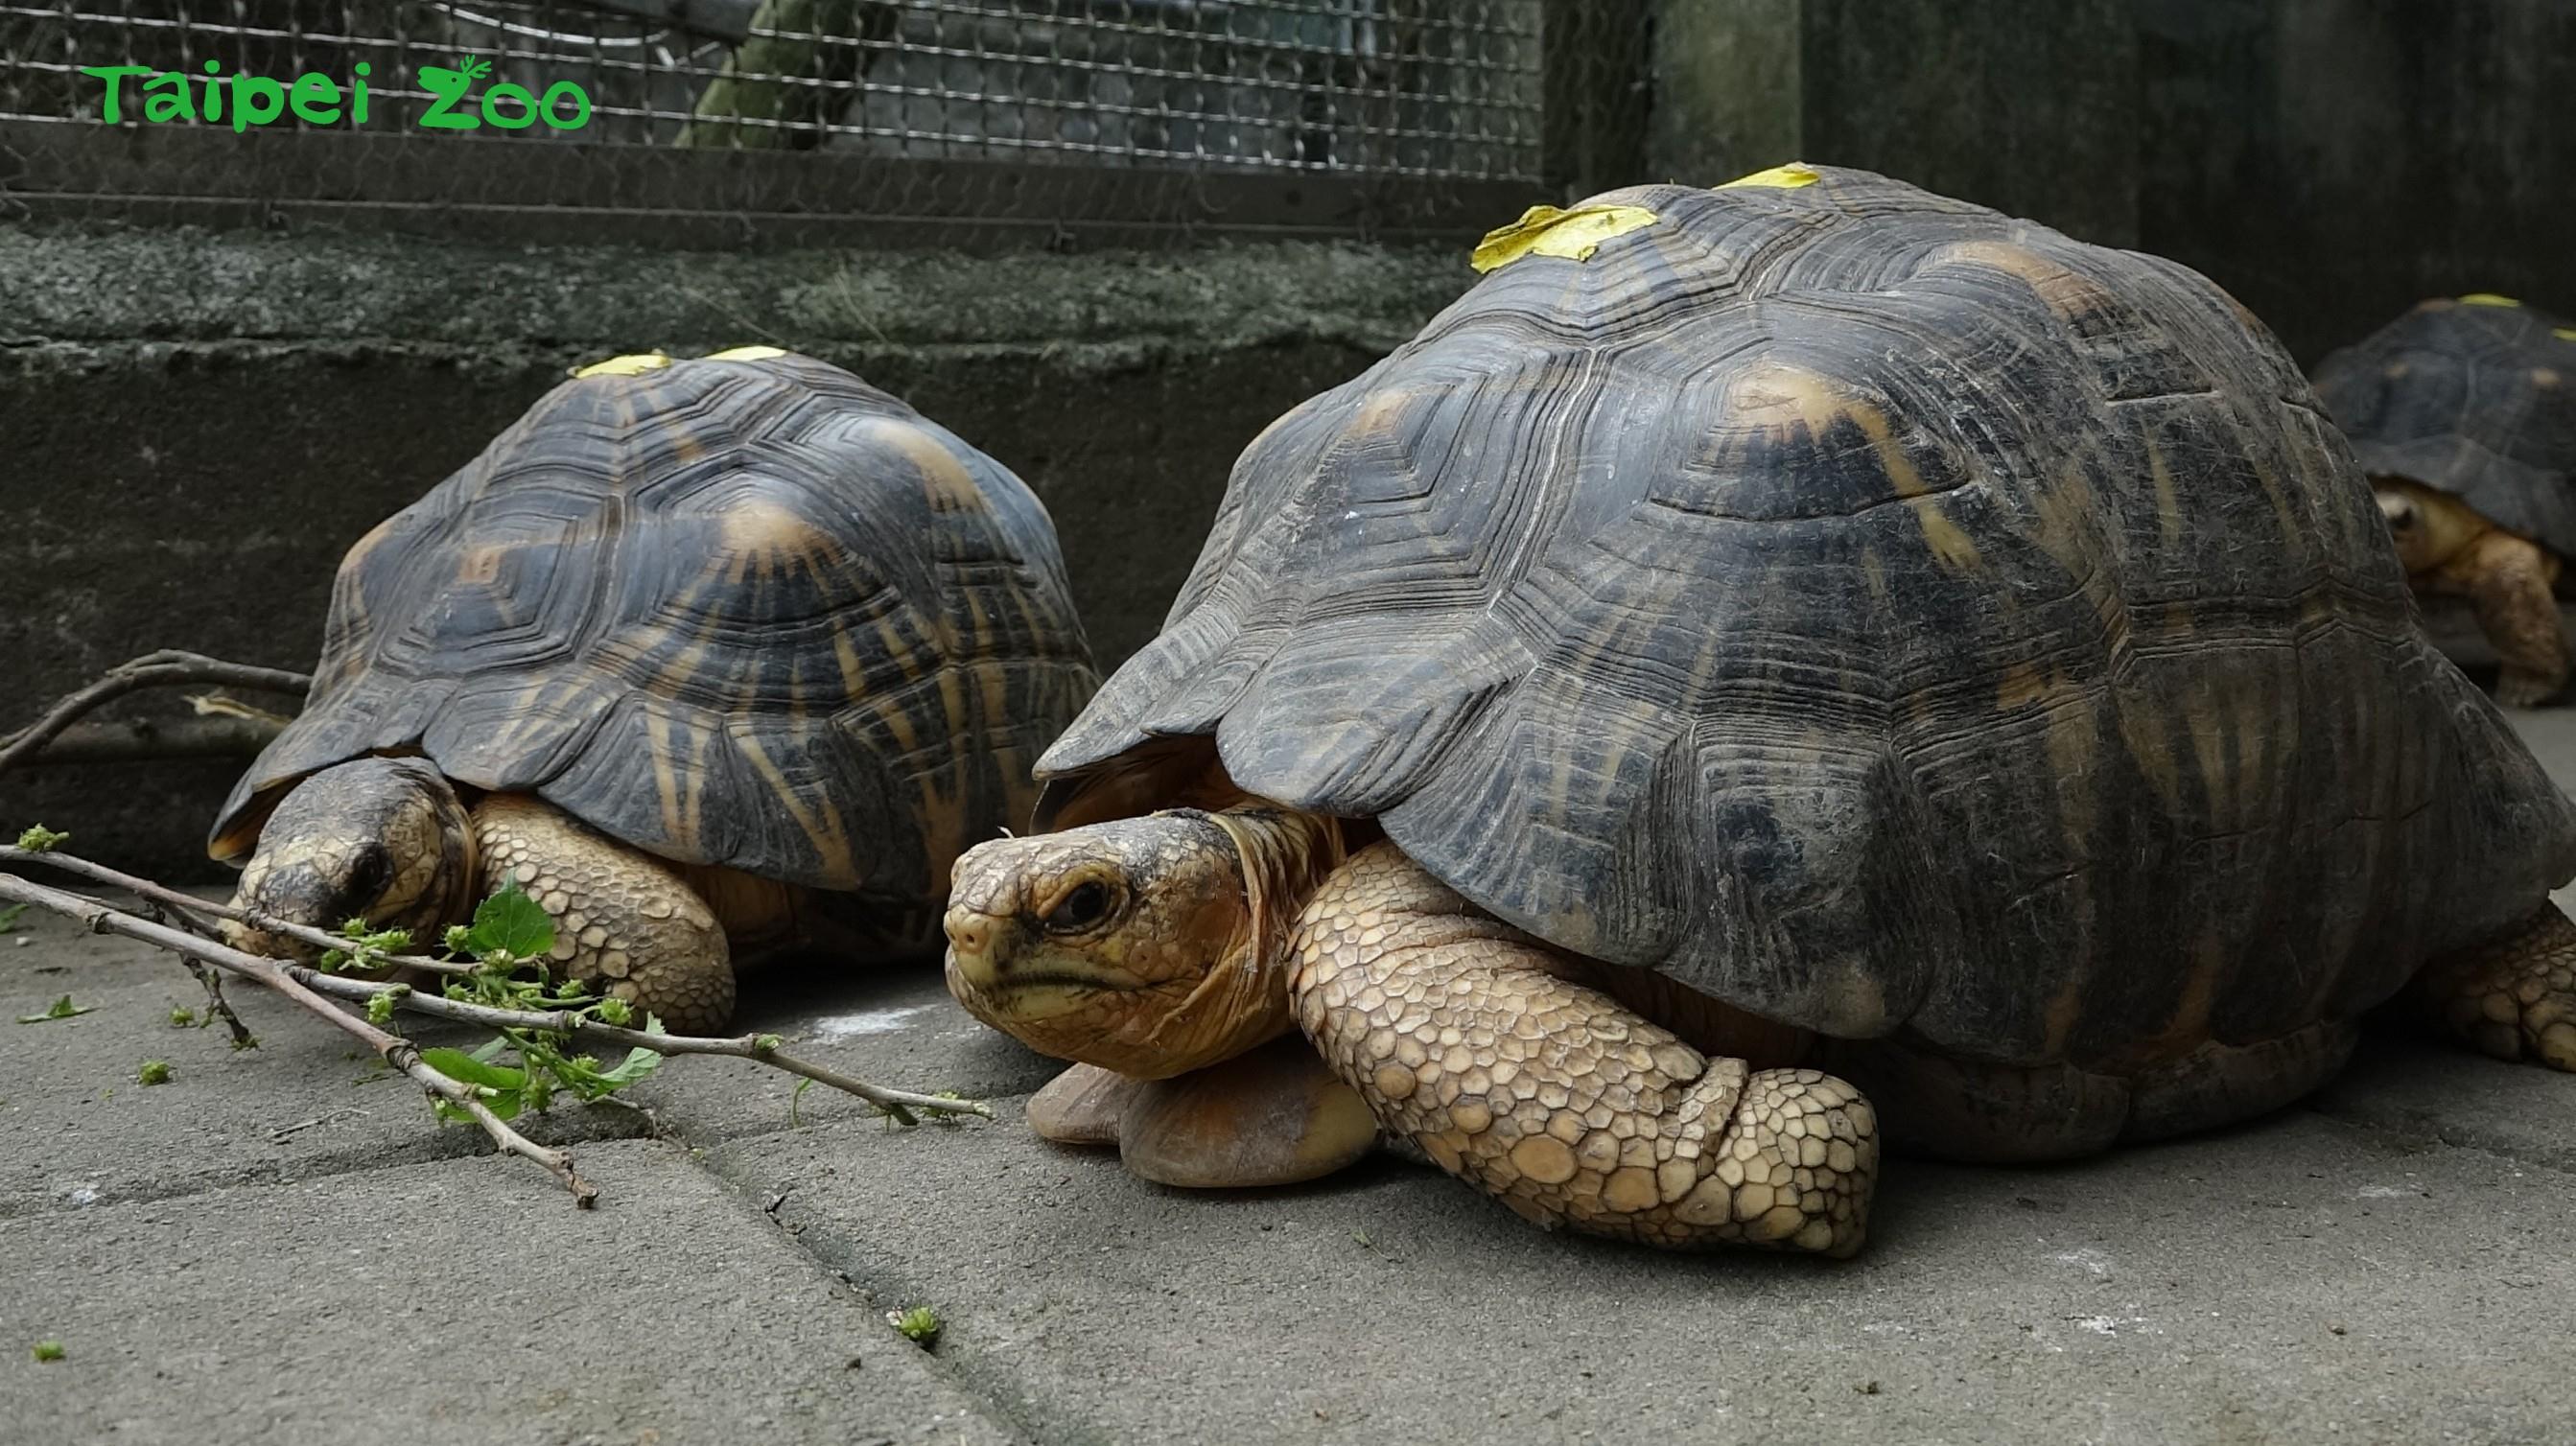 射紋陸龜的主食是桑葉和青菜，身形呈球形。照片來源：臺北市立動物園新聞稿